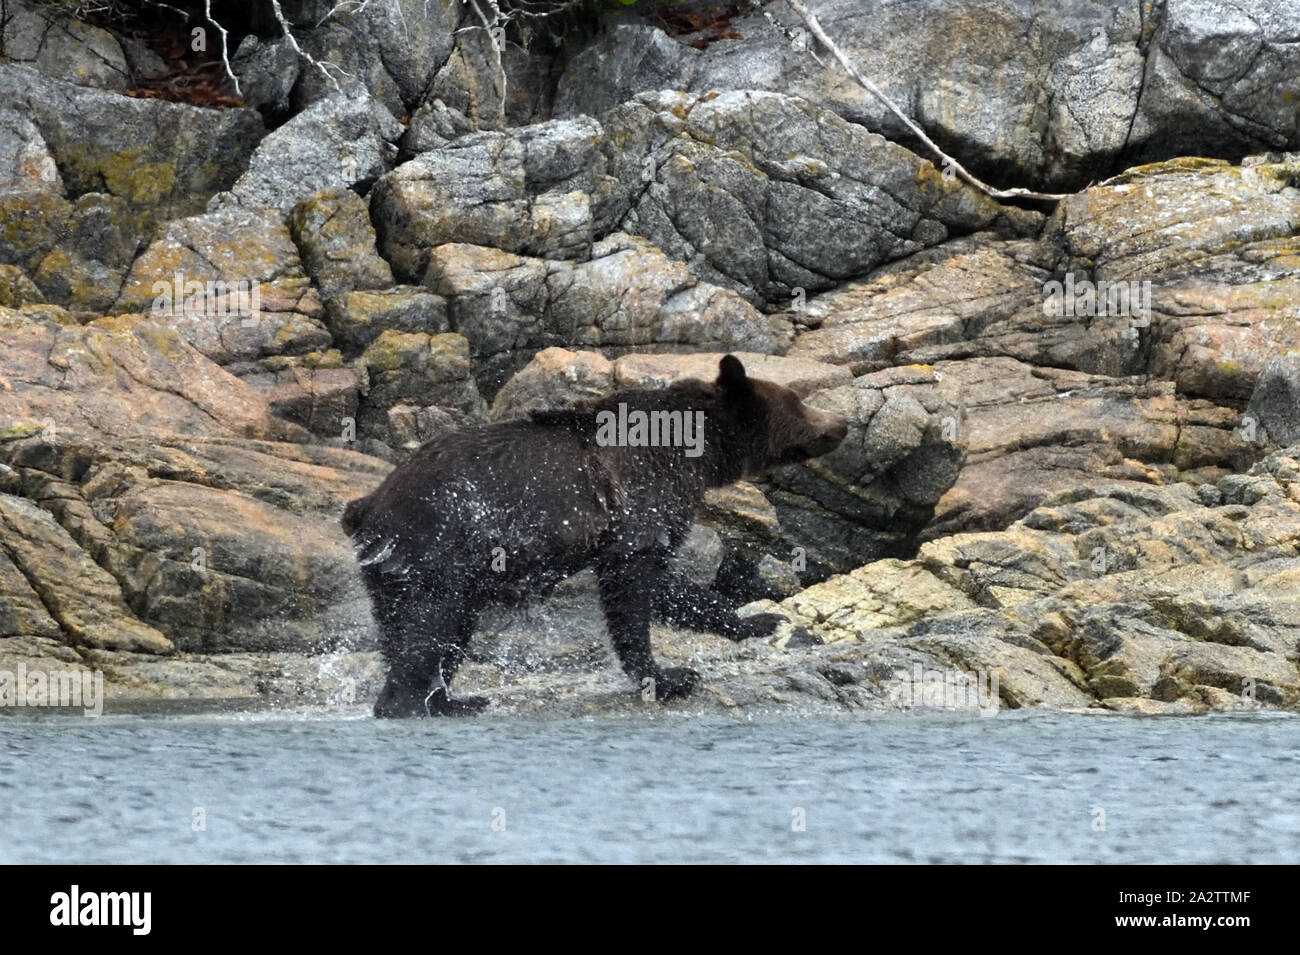 Un jeune ours grizzly (Ursus arctos), serre l'eau de son manteau après la baignade à une île pour se nourrir de baies. Port McNeil, British Columbia, Canada. Banque D'Images